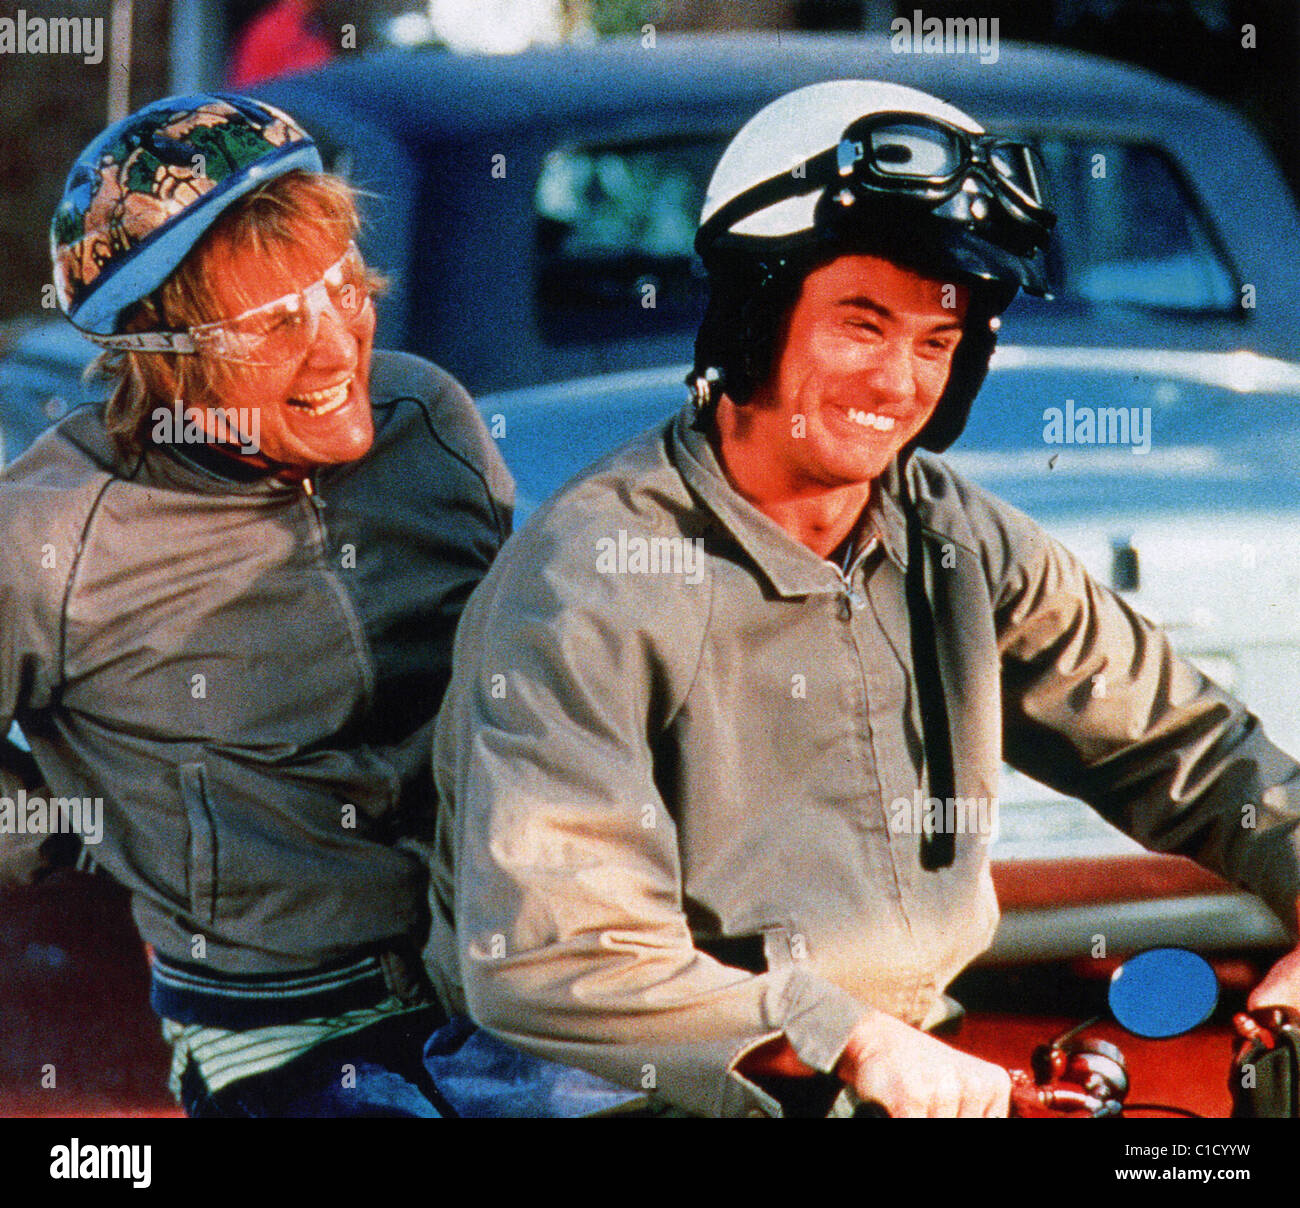 DUMB & più scemo 1994 New Line film con Jim Carey a destra e Jeff Daniels Foto Stock